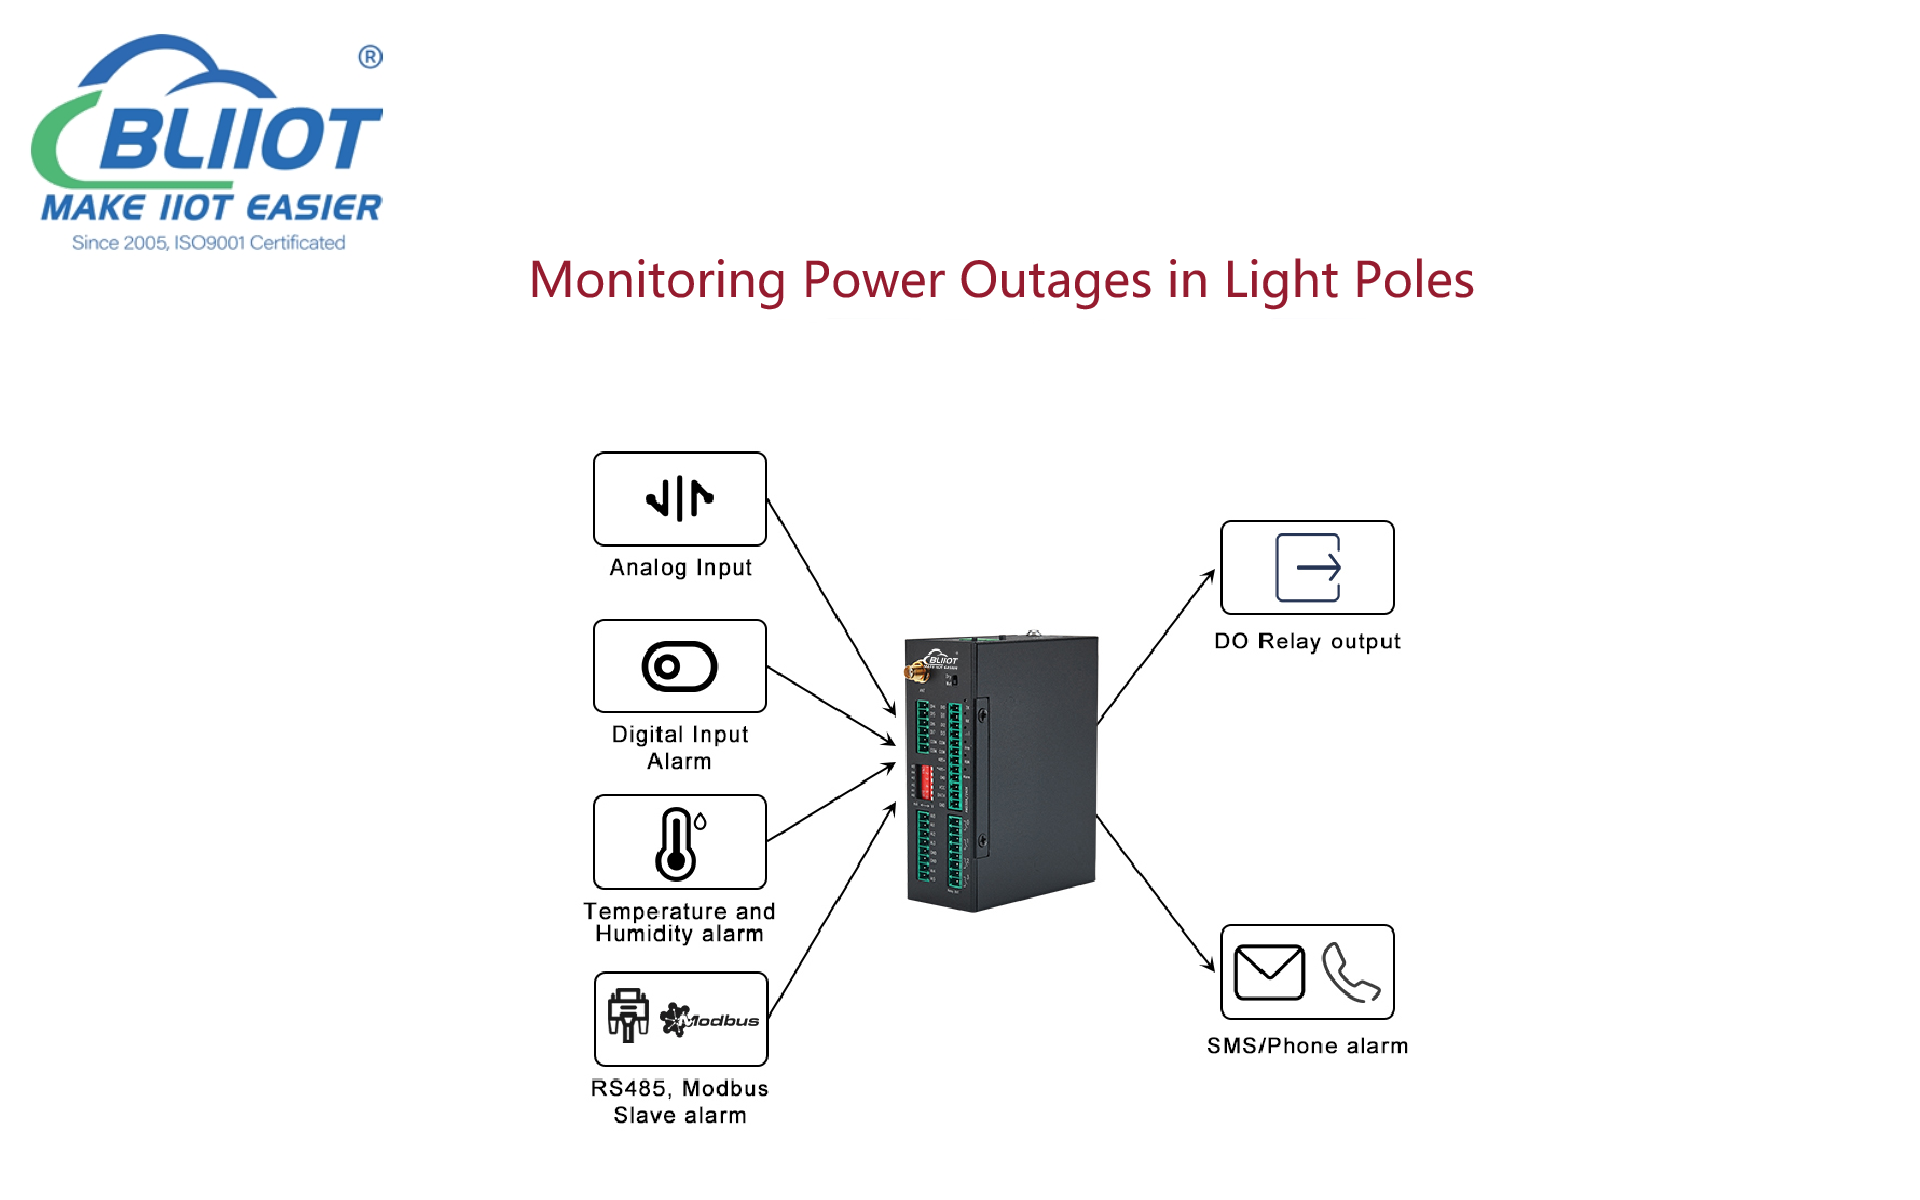 Solución avanzada de RTU para la monitorización de cortes de energía en postes de luz